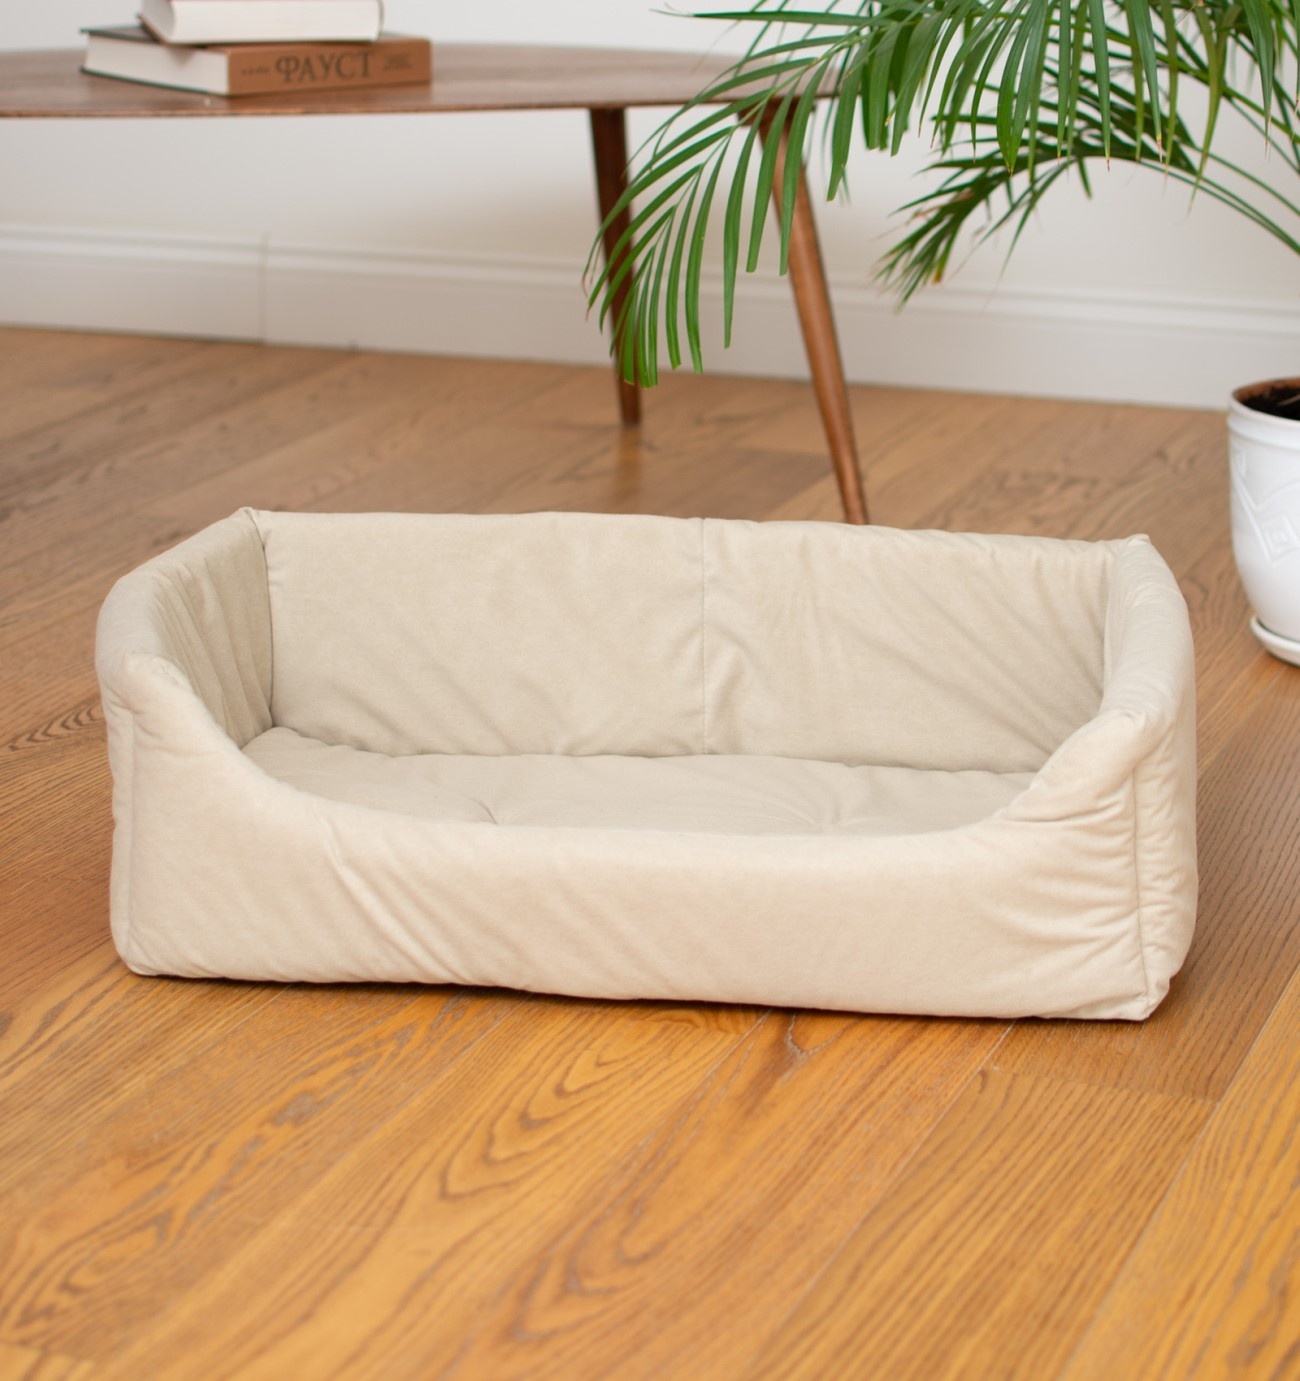 PETSHOP лежаки PETSHOP лежаки лежак прямоугольный с подушкой, бежевый (51х35х17 см) лежак кроватьtommy rombus 65 для собак и кошек коричневый ромб